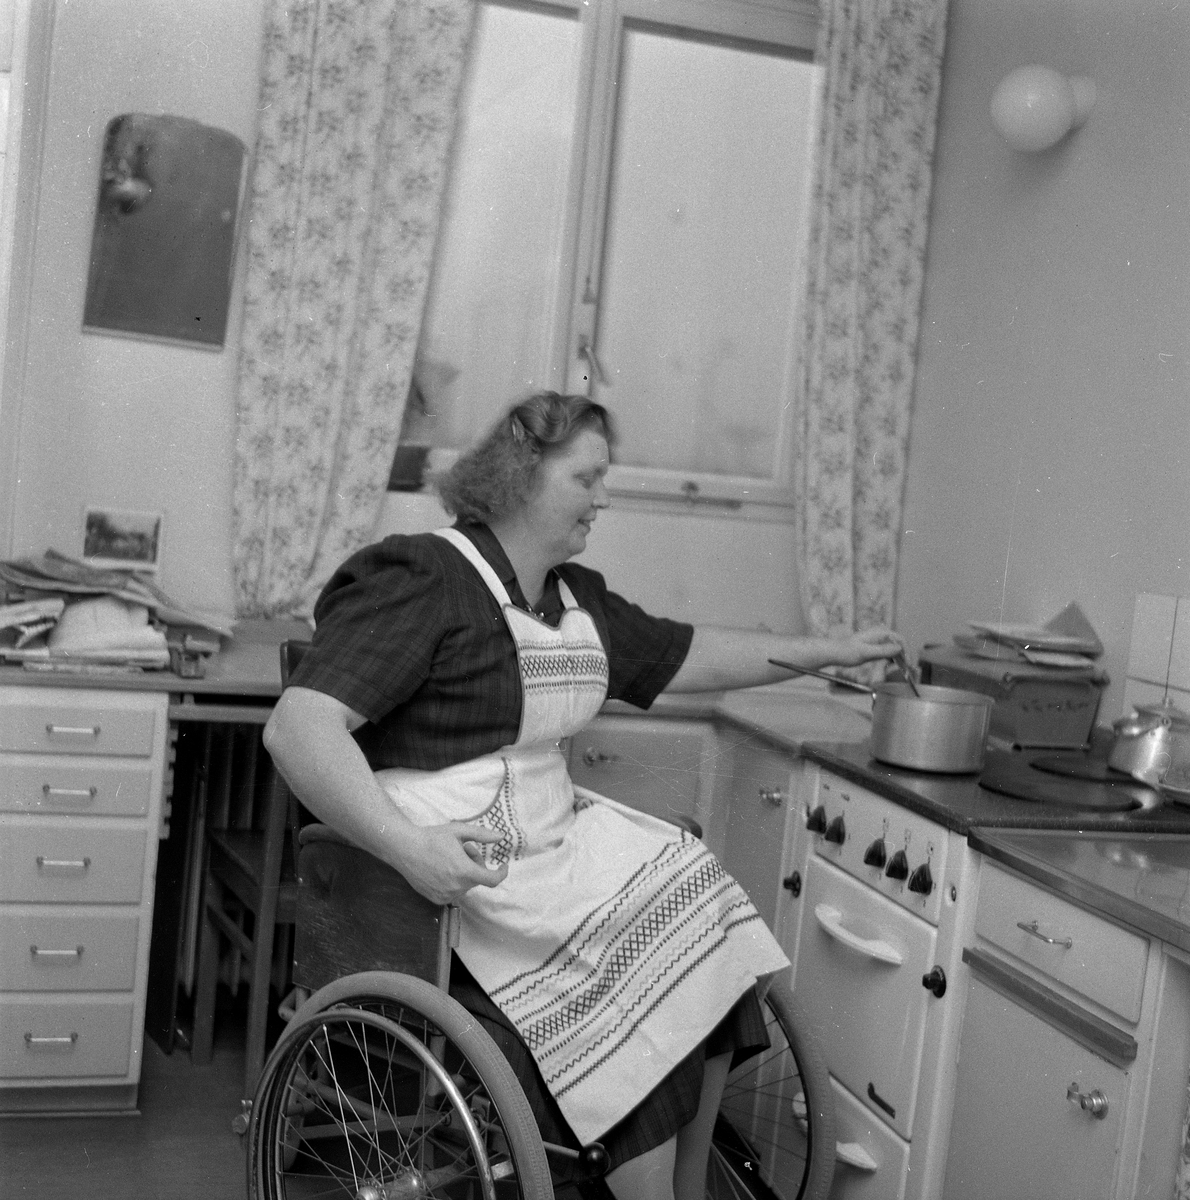 Poliomakar i Baronbacken.
17 november 1958.